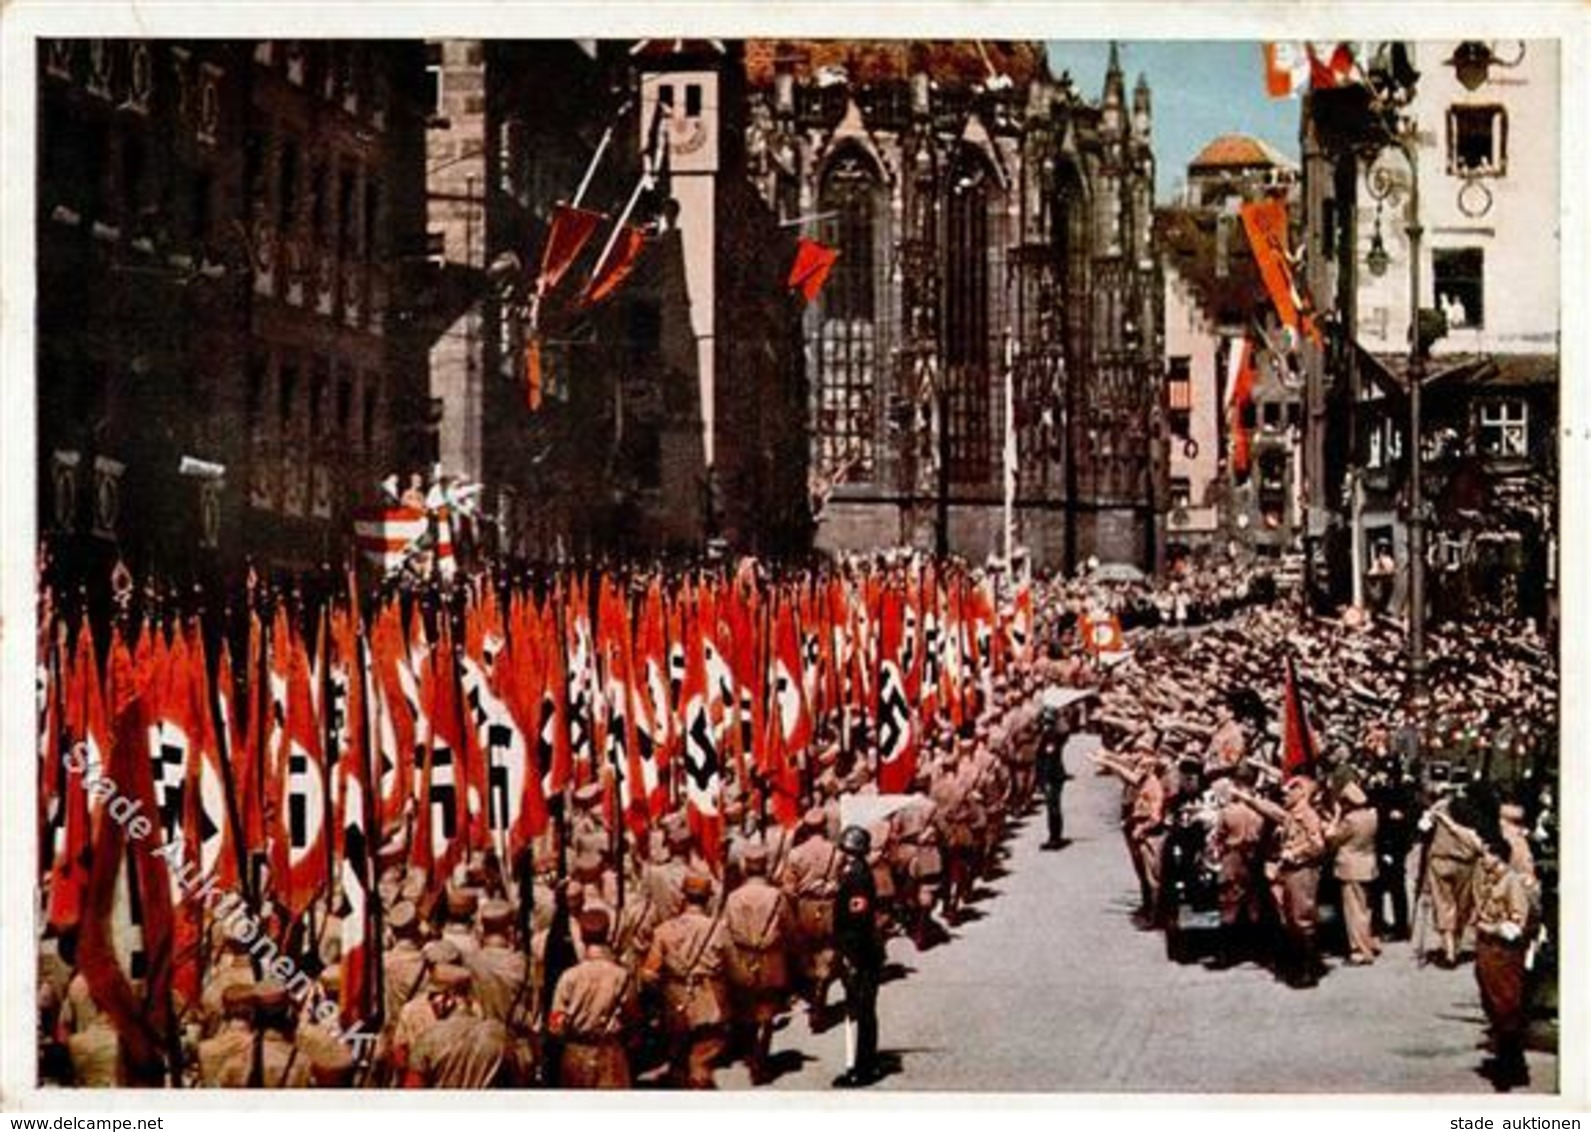 REICHSPARTEITAG NÜRNBERG WK II - PH 442 -der Führer Nimmt Den Vorbeimarsch Der SA Am Adolf-Hitler-Platz Ab - S-o 1935 I- - Guerra 1939-45